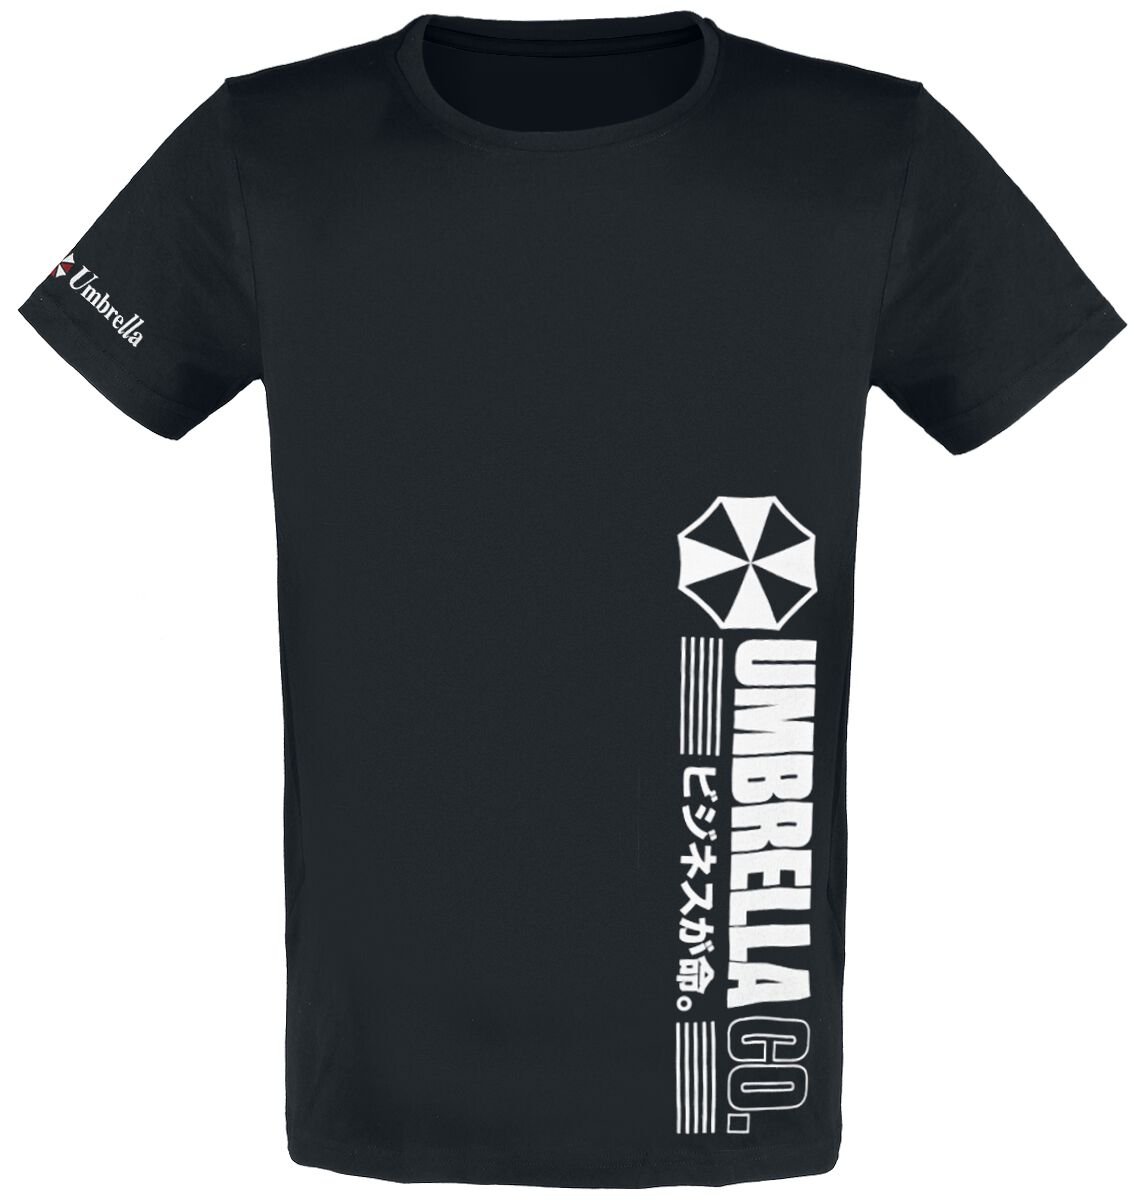 Resident Evil - Gaming T-Shirt - Umbrella Co. - S bis L - für Männer - Größe M - schwarz